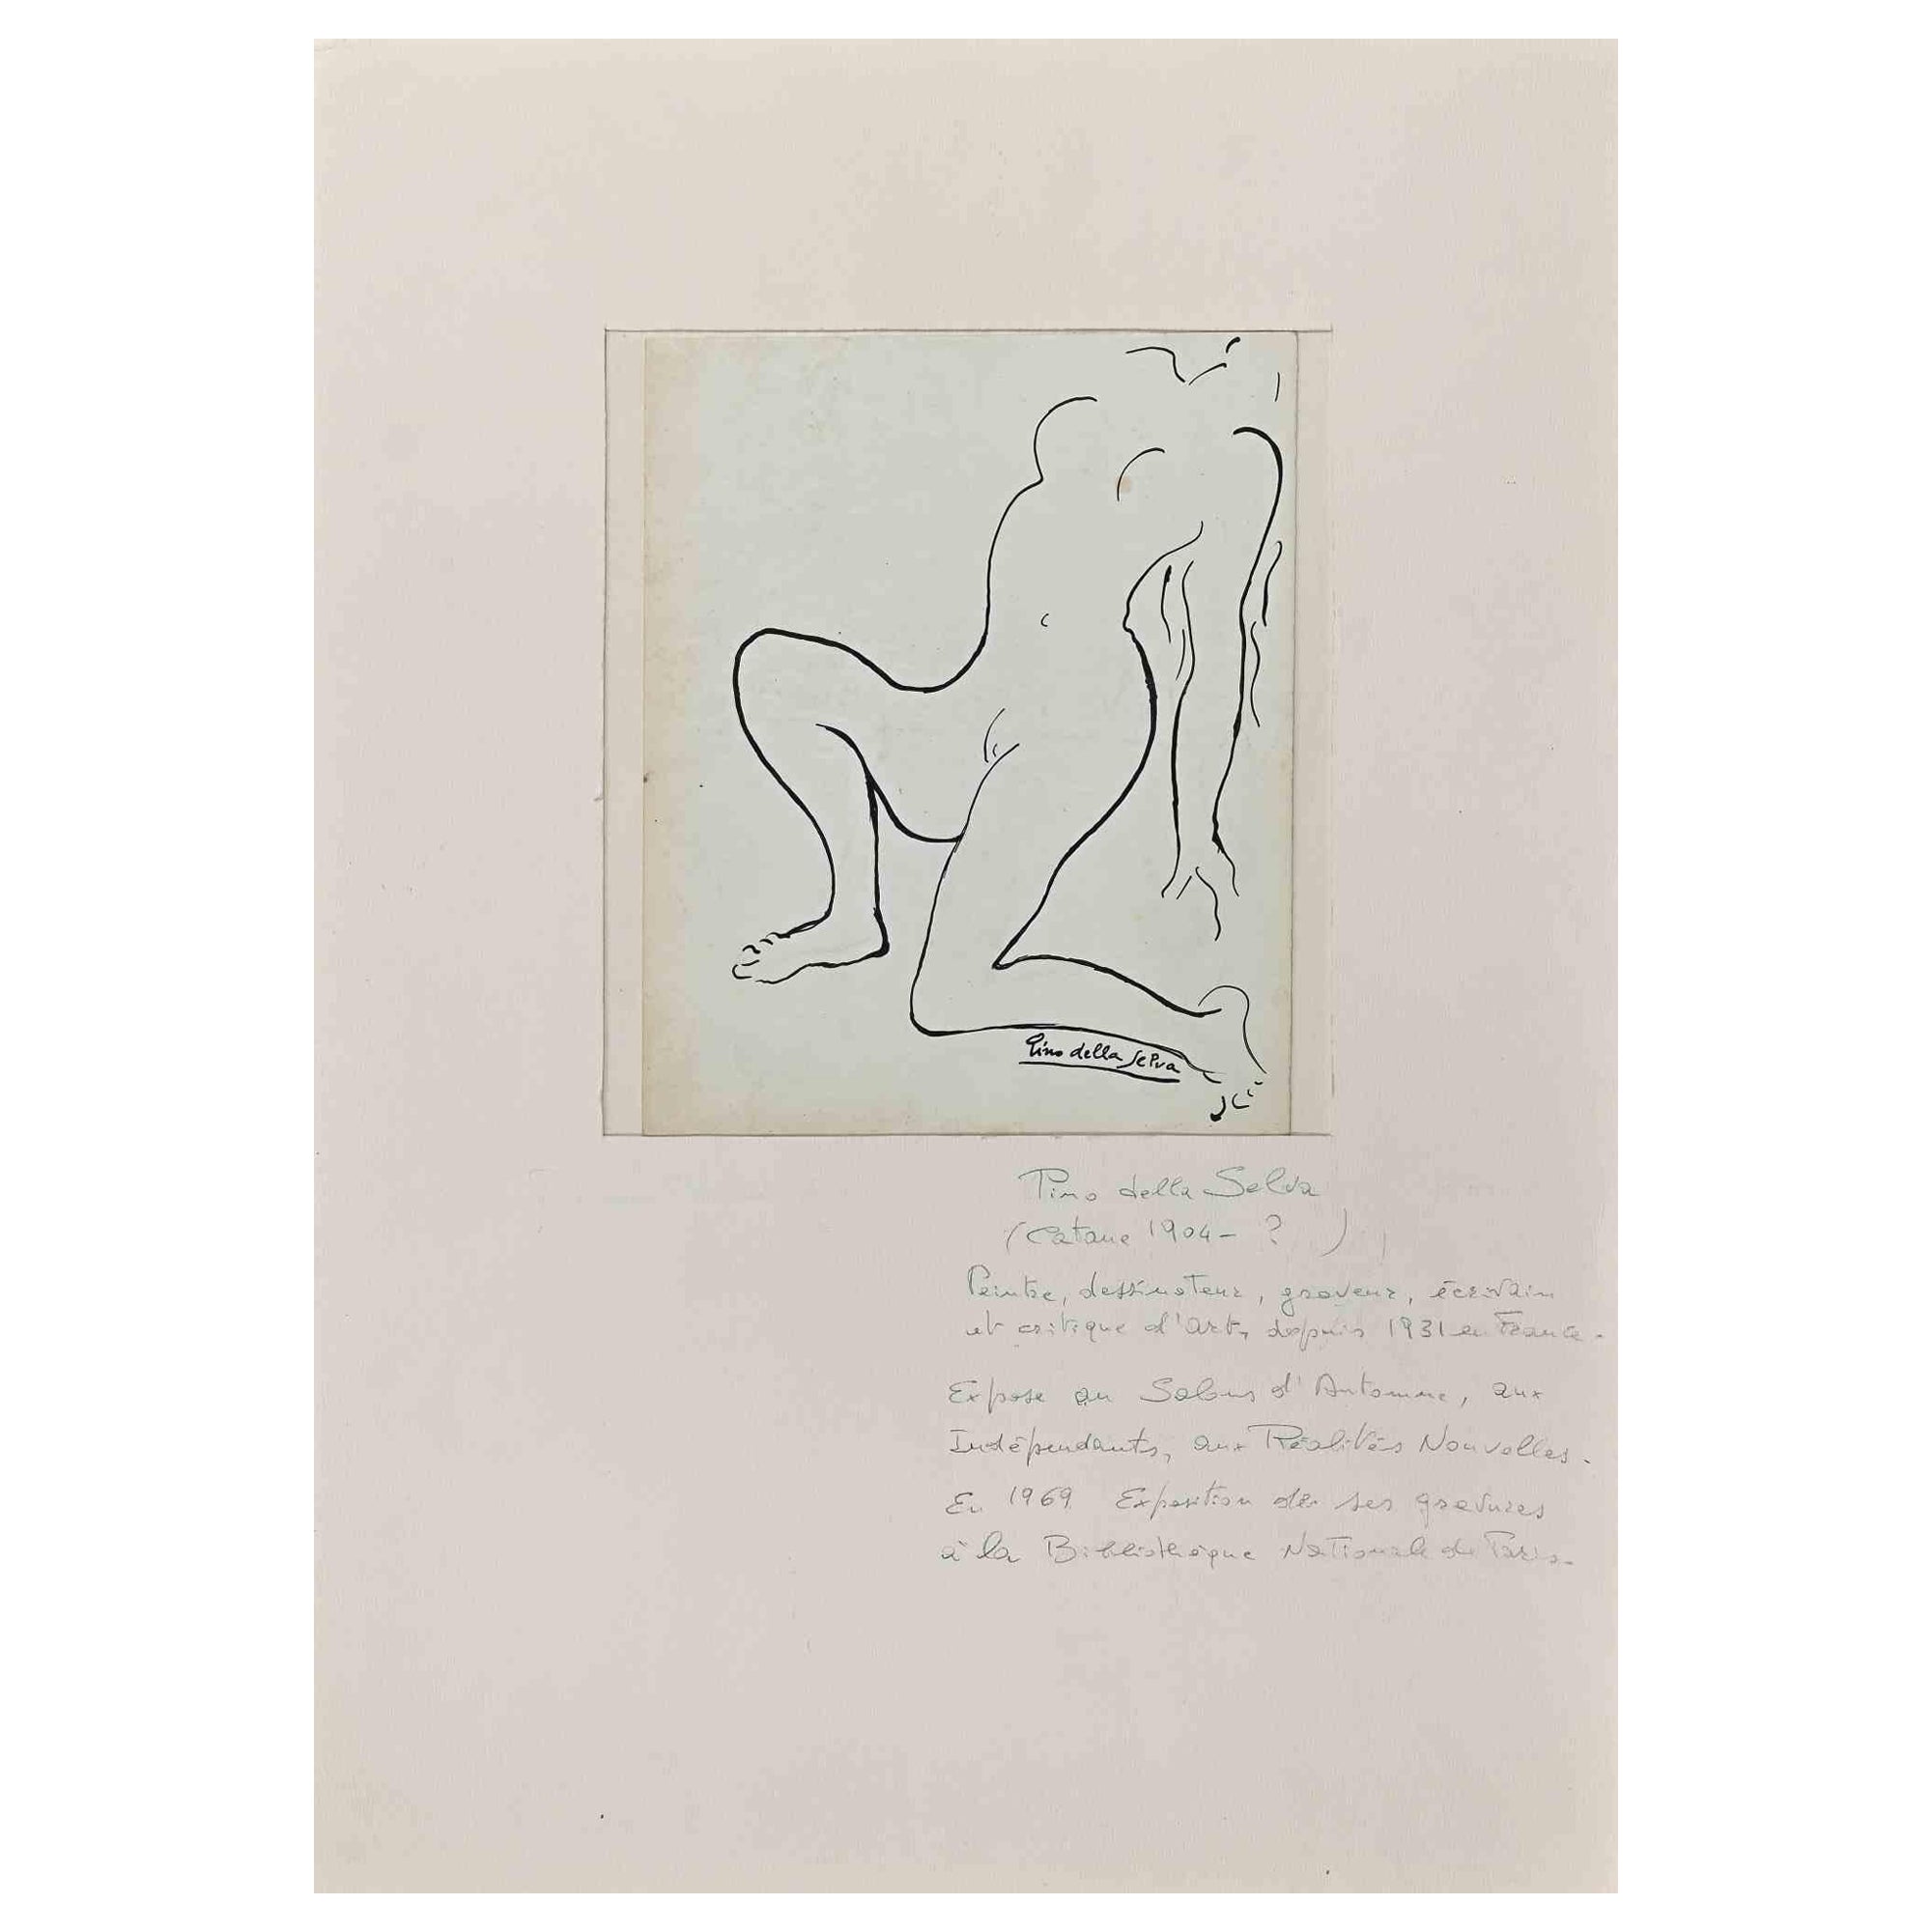 Akt einer Frau ist eine Original-Tuschezeichnung von Pino della Selva (1904-1987).

Guter Zustand einschließlich eines weißen Passepartouts aus Karton (50x35 cm).

Handsigniert vom Künstler in der rechten unteren Ecke.

Pino della Selva (Pseudonym